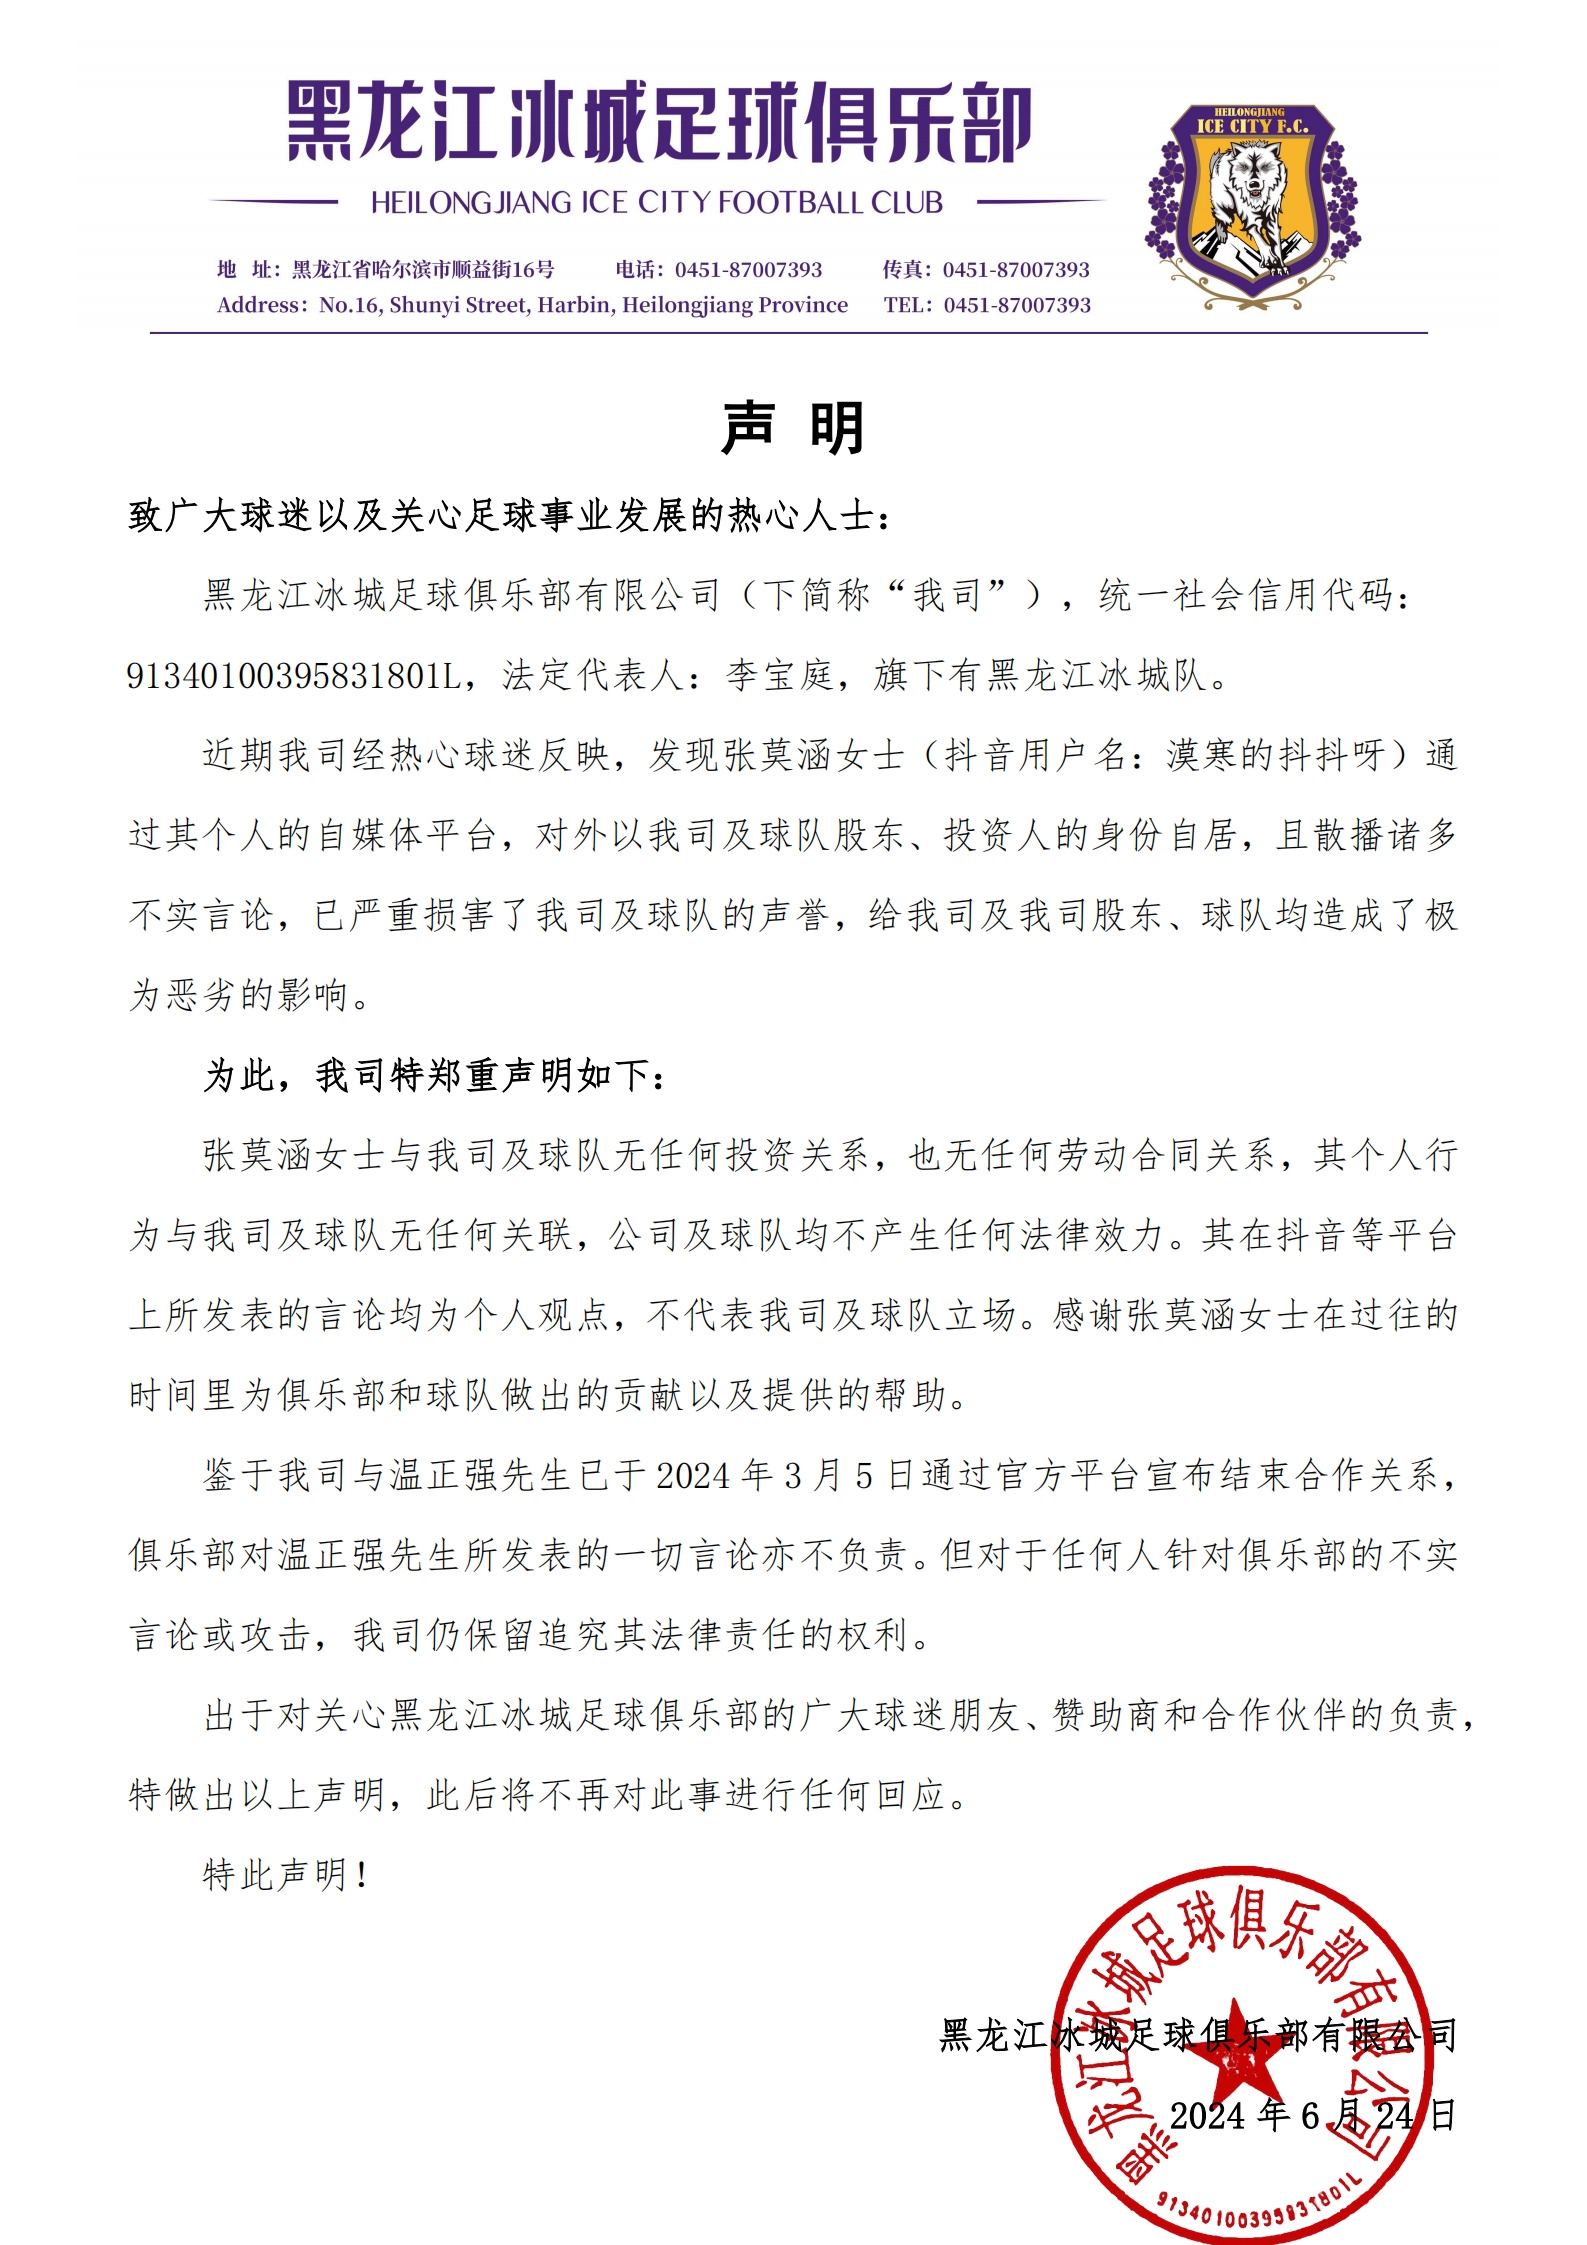 ❓黑龙江冰城声明：漠寒以俱乐部股东、投资人自居，但双方无关系